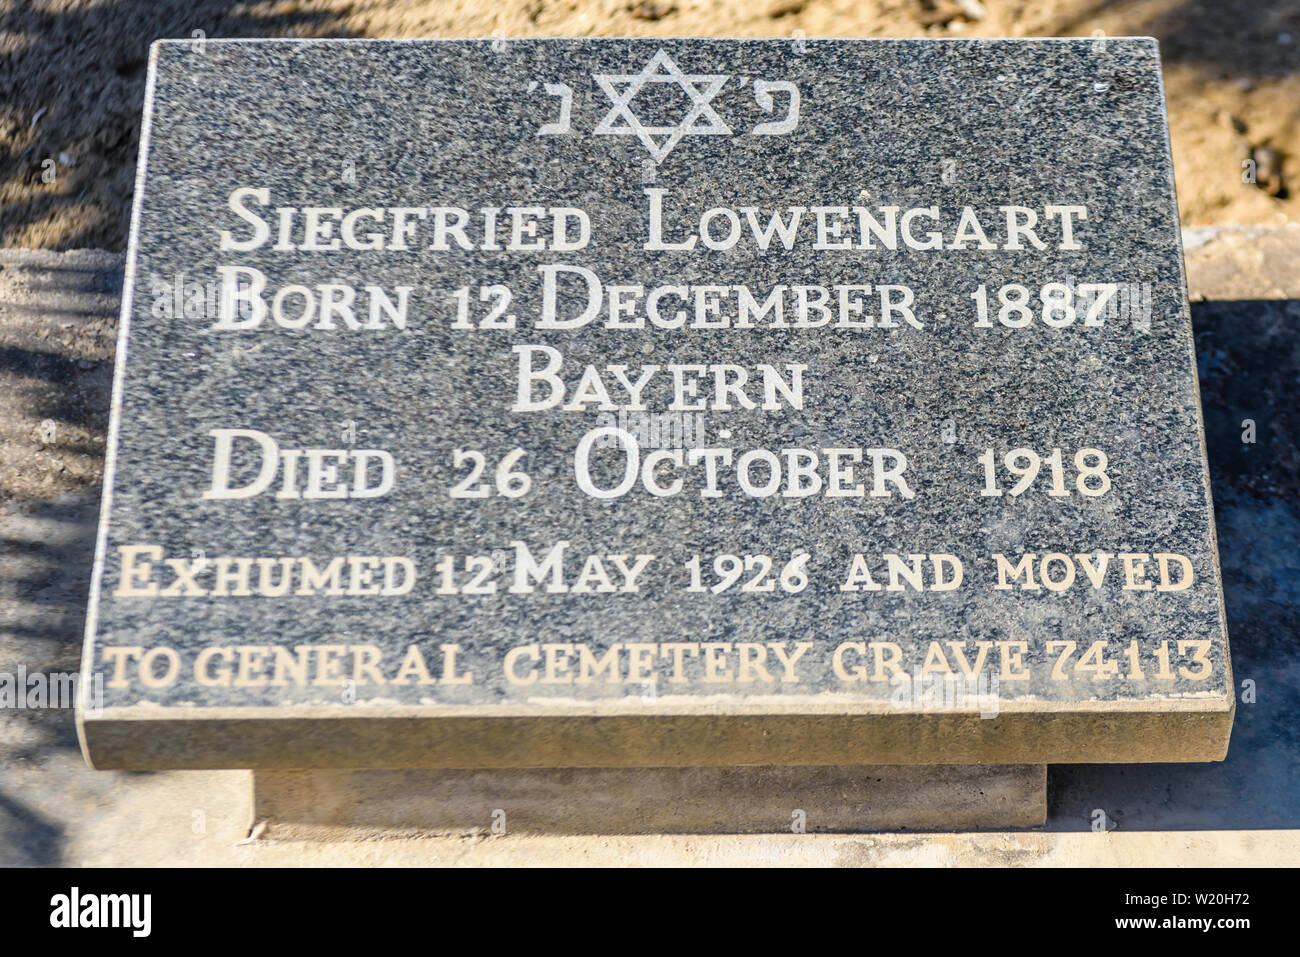 Grabstein für einen jüdischen Mann in einem deutschen Friedhof, der 1918 starb. Sein Körper wurde 1926 exhumiert, 8 Jahre nach seiner Beerdigung, und auf einem anderen Friedhof verlegt. Namibia Stockfoto